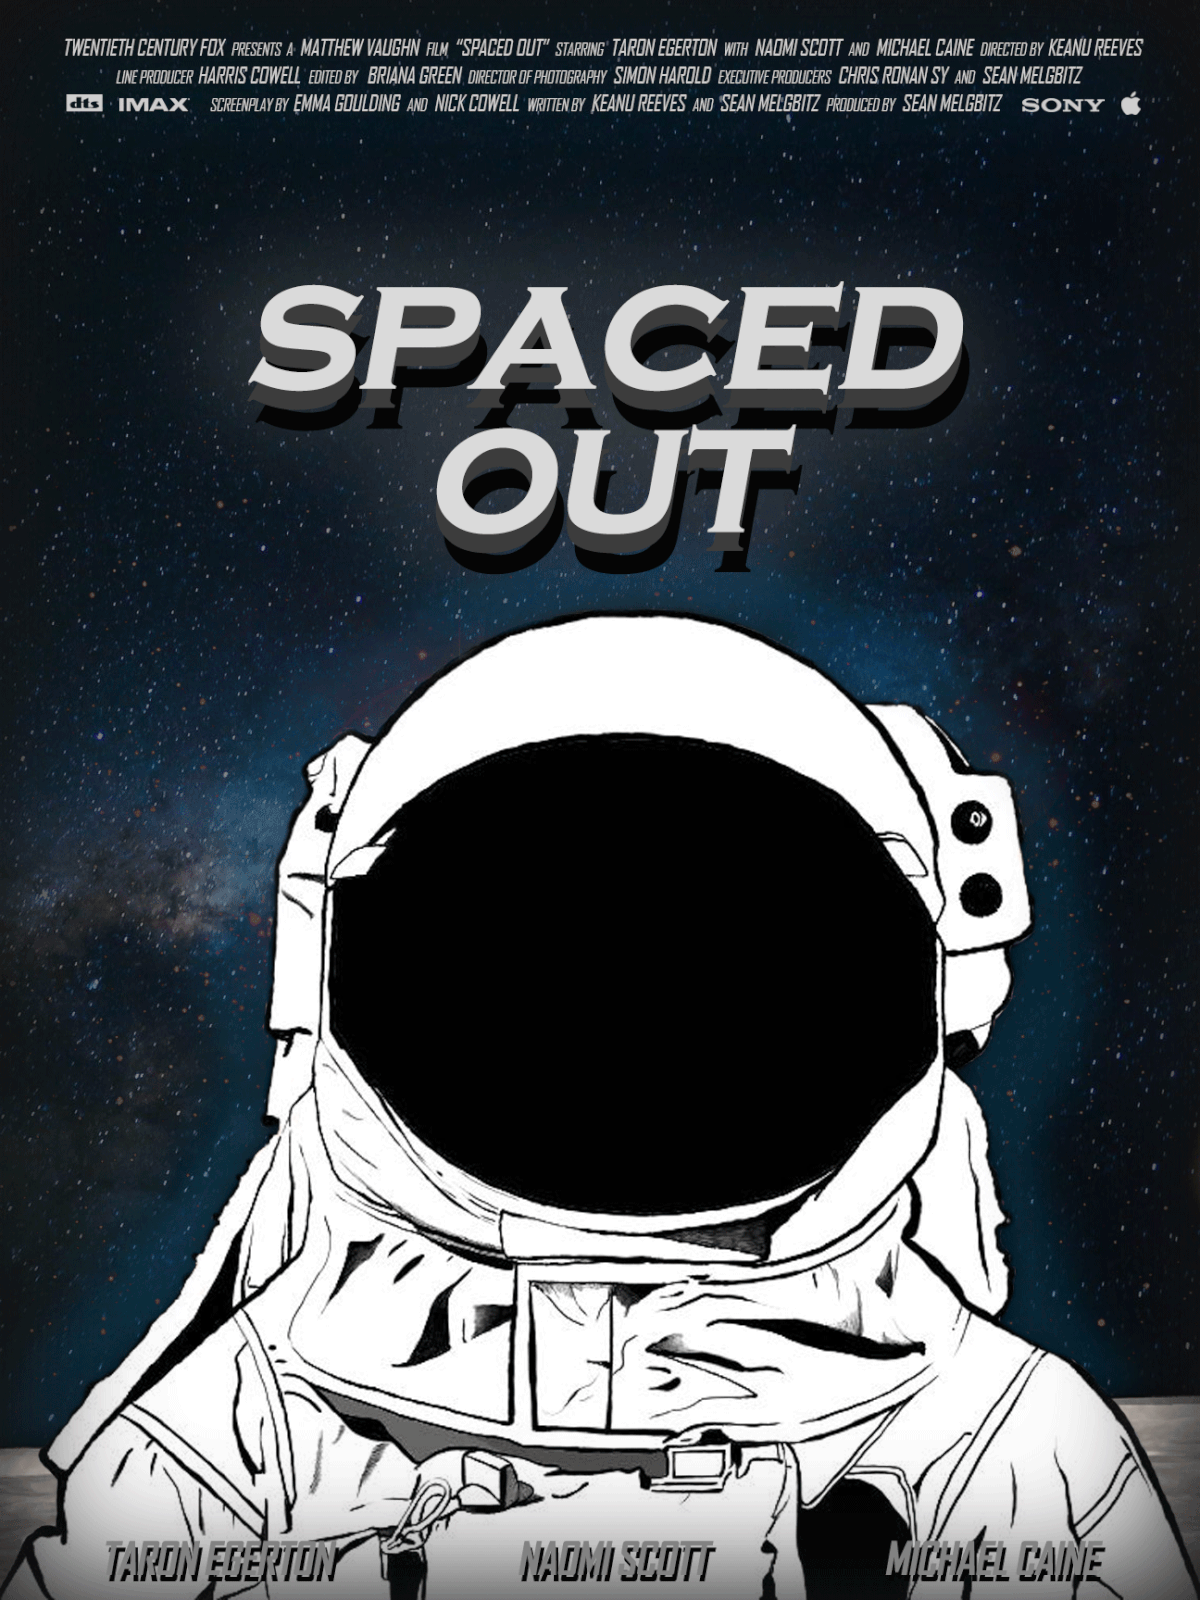 Adobe Photoshop astronaut movie movie design movie poster movie poster design photoshop poster Poster Design Space 